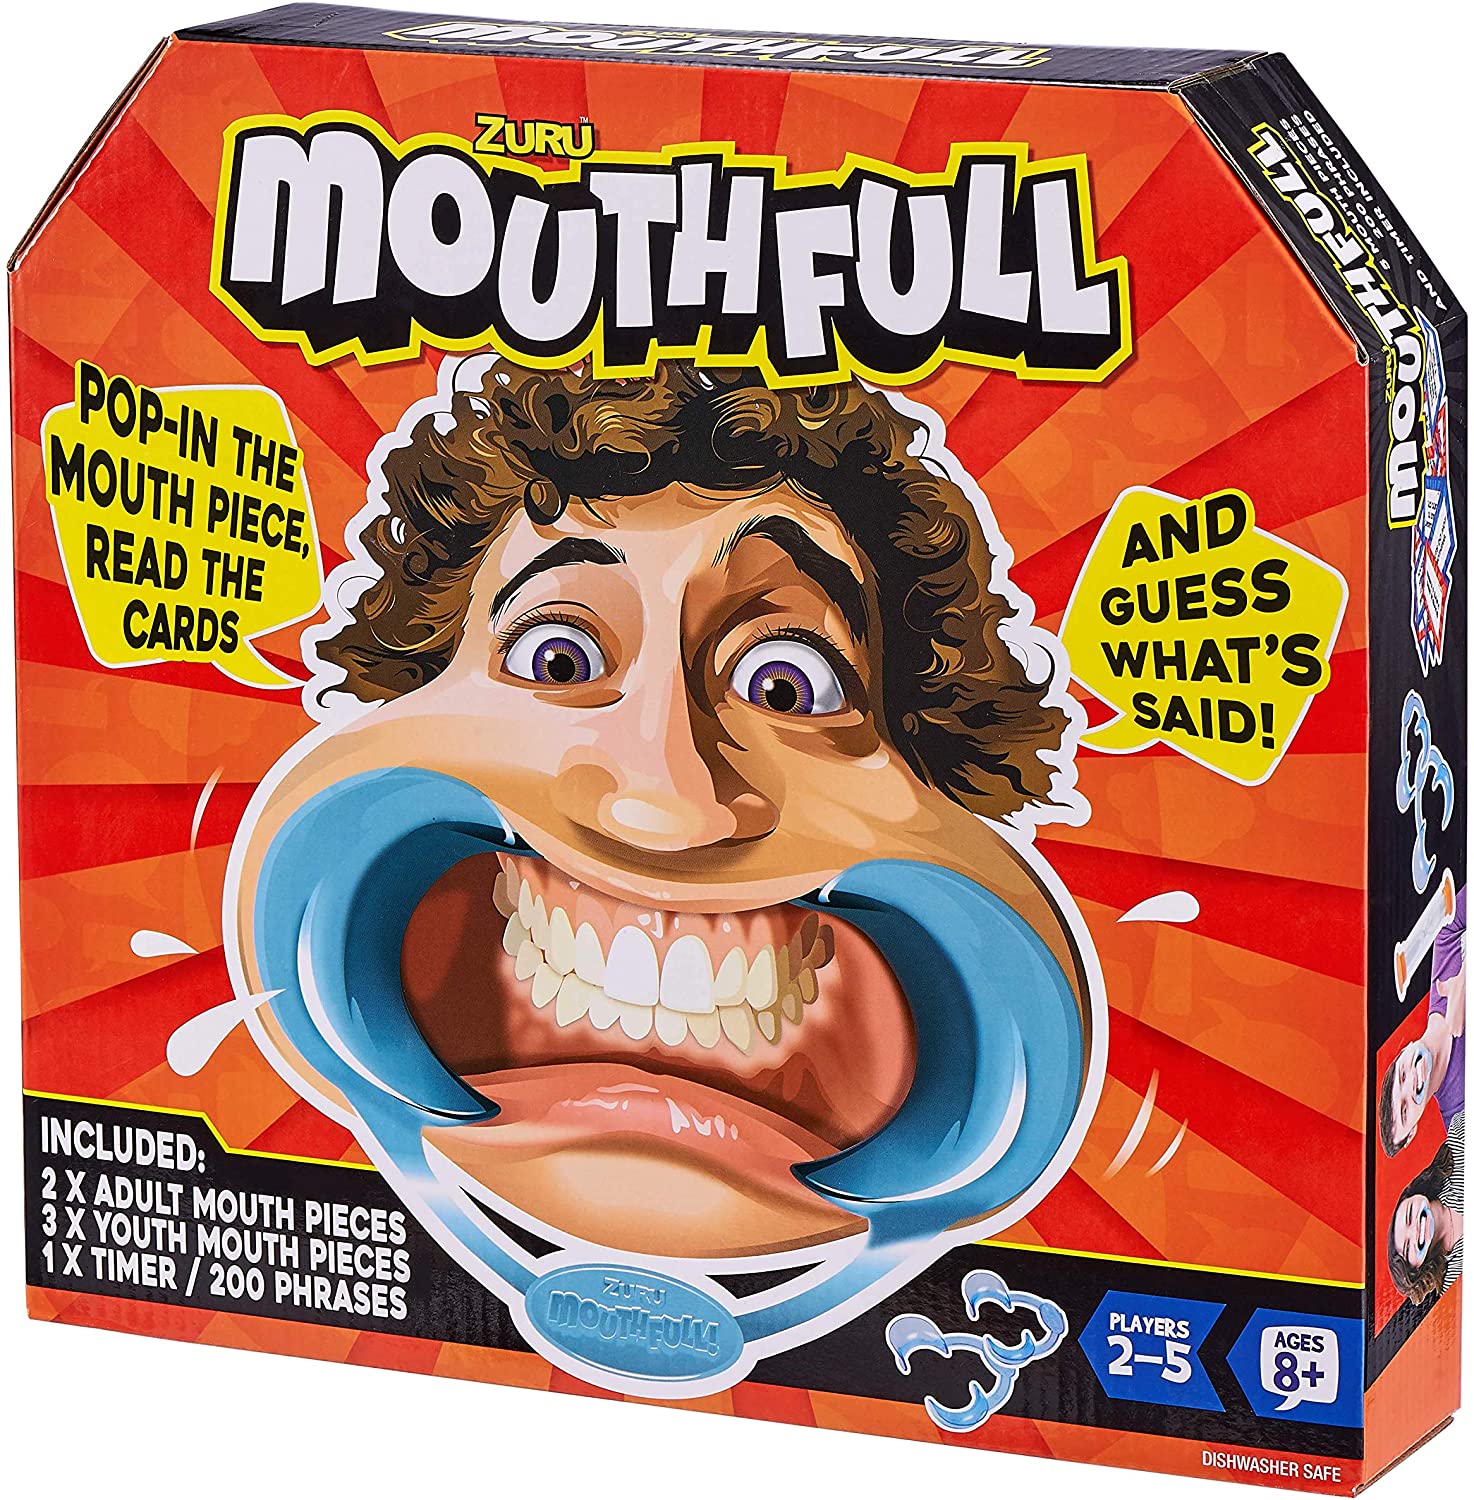 Zuru Mouth Full in color box